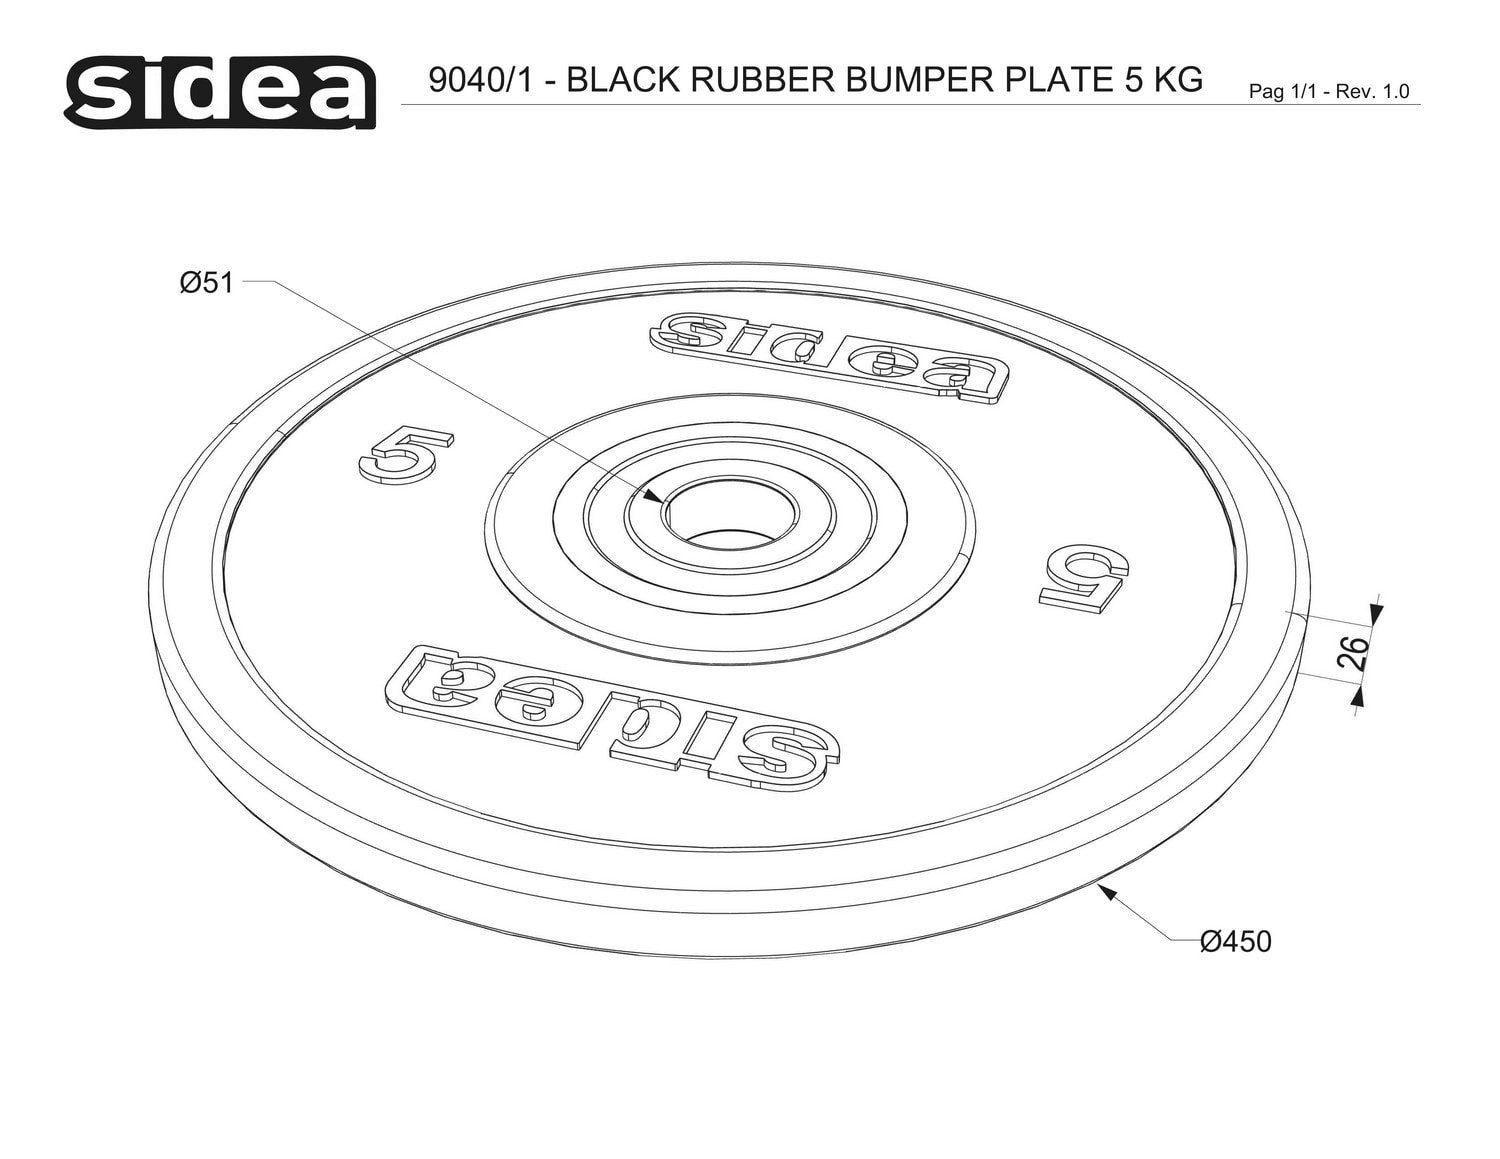 9040/1-9044/1 Black Rubber Bumper Plate - Piastre in gomma